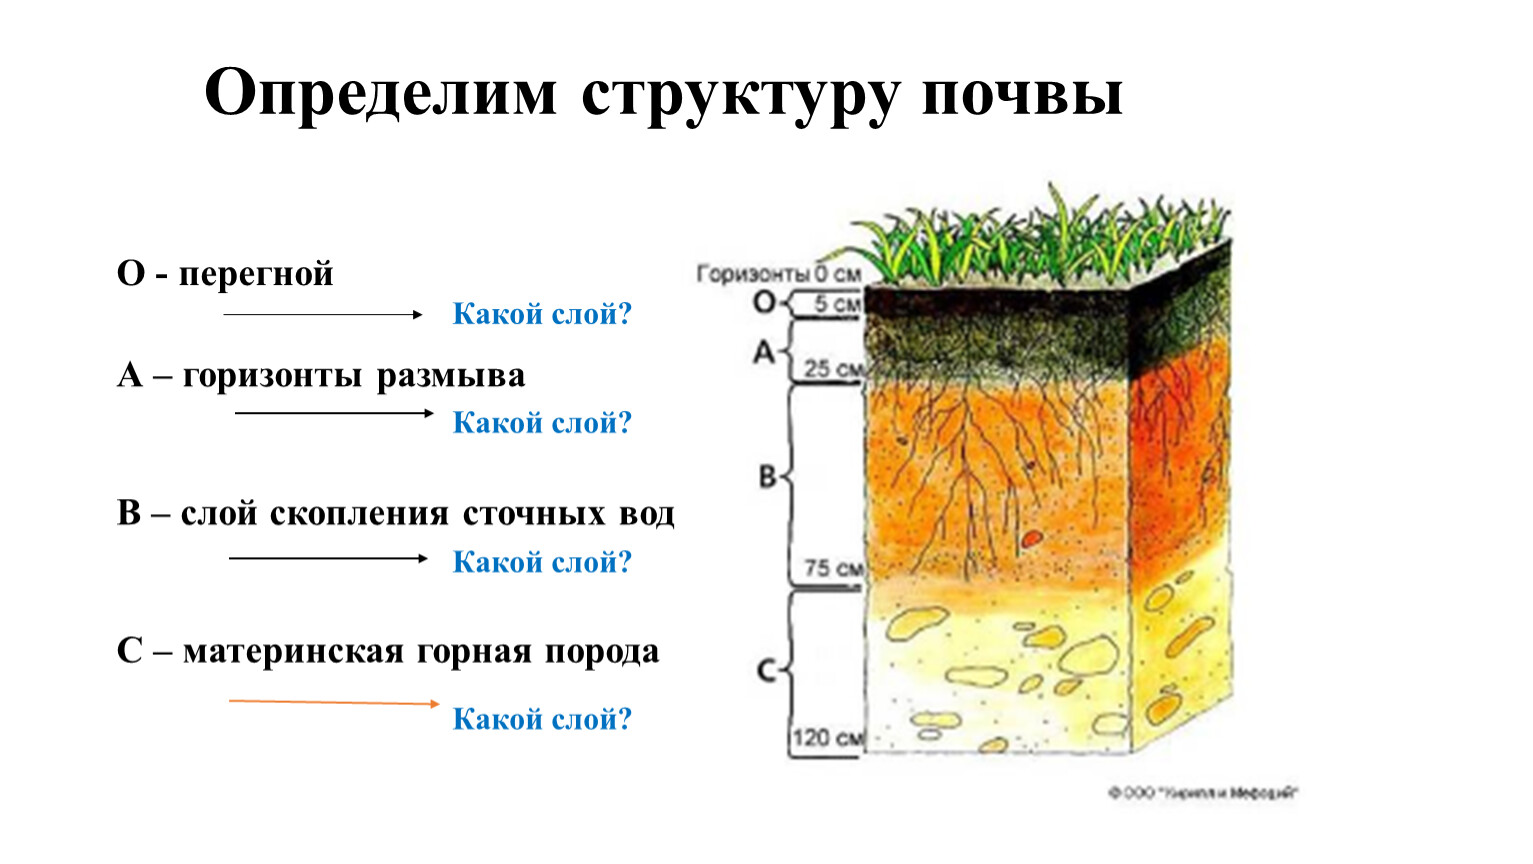 Горизонты горных пород. Определения почвы состав почвы. Почвы состав строение и структура. Строение почвы почвенные горизонты. Чернозем схема почвы.